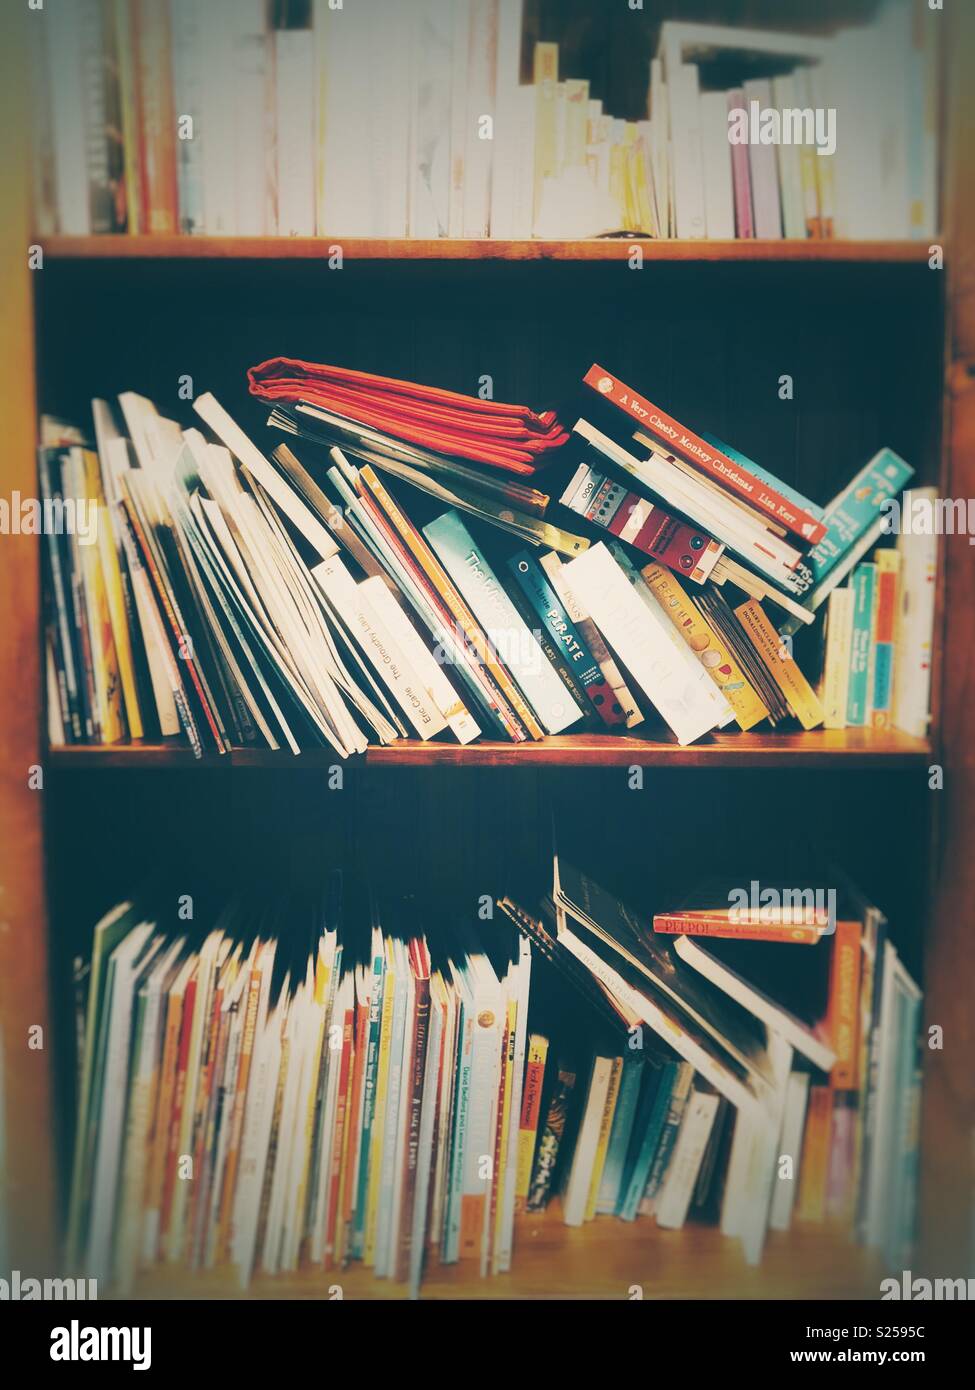 Books on bookshelves Stock Photo